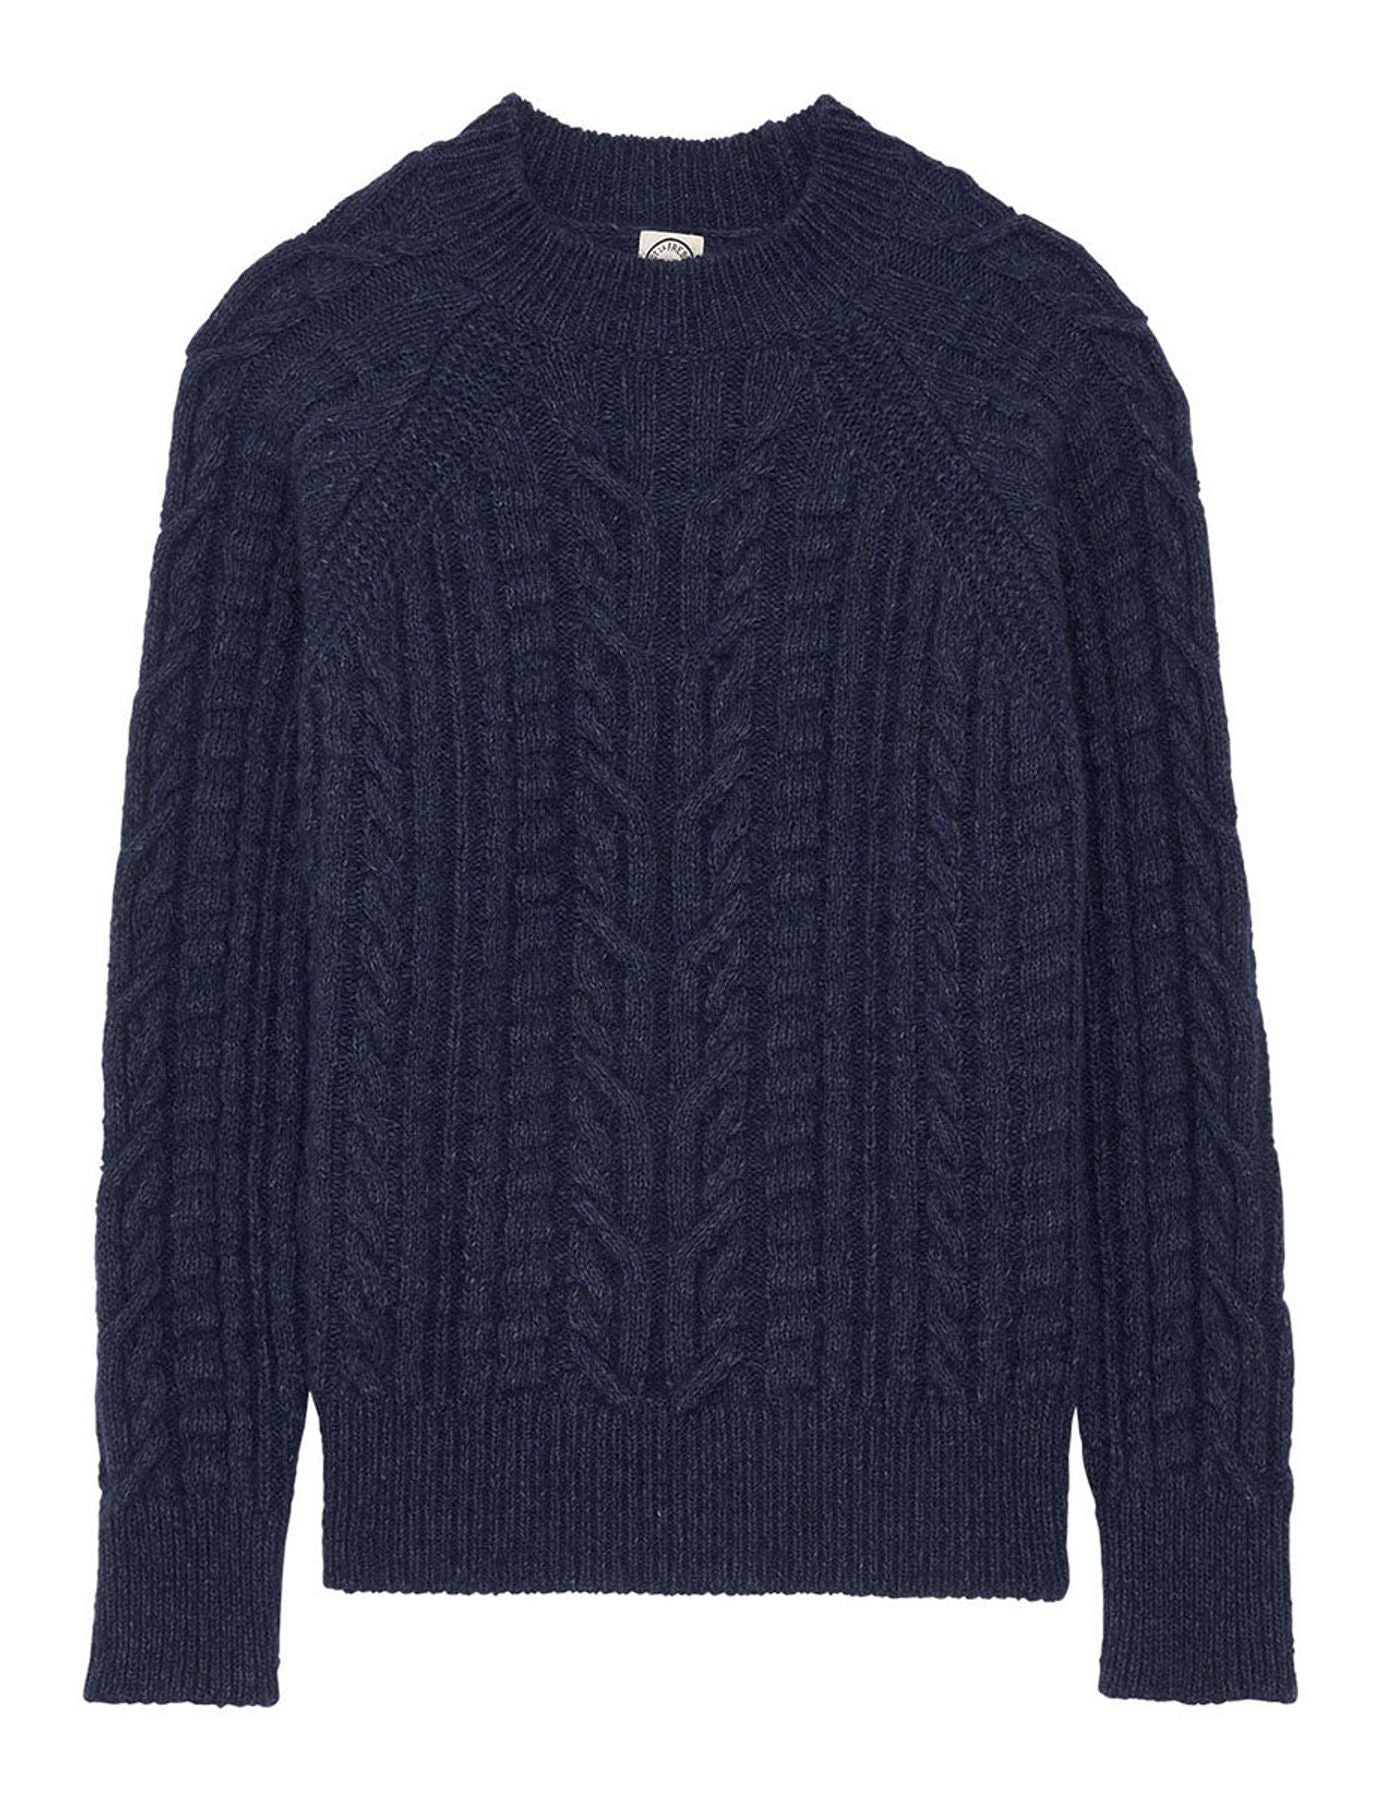 maglione blu navy-louison